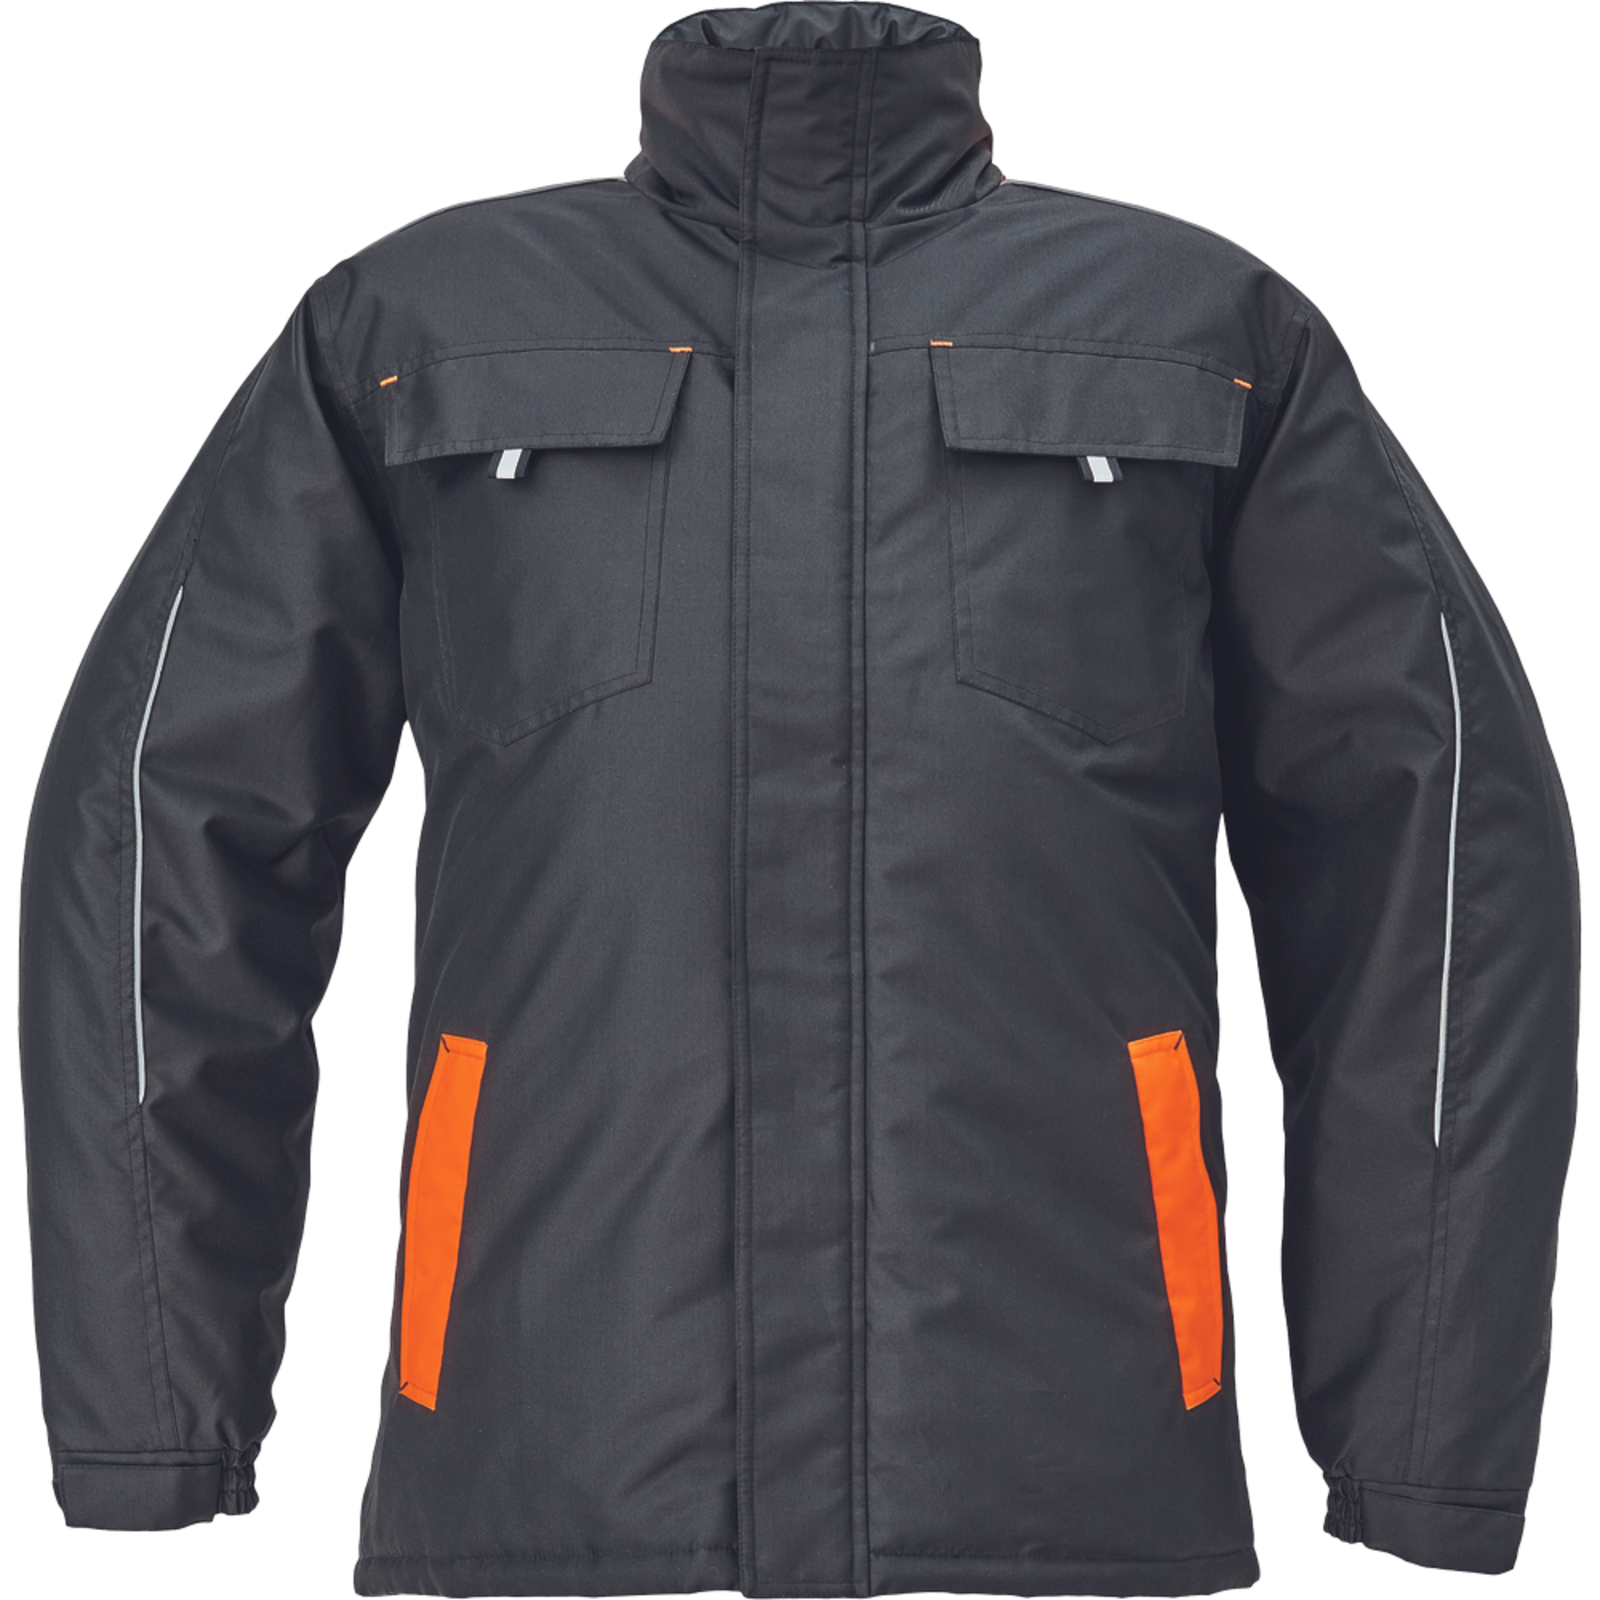 Zimná bunda Cerva Max Vivo pánska - veľkosť: L, farba: čierna/oranžová